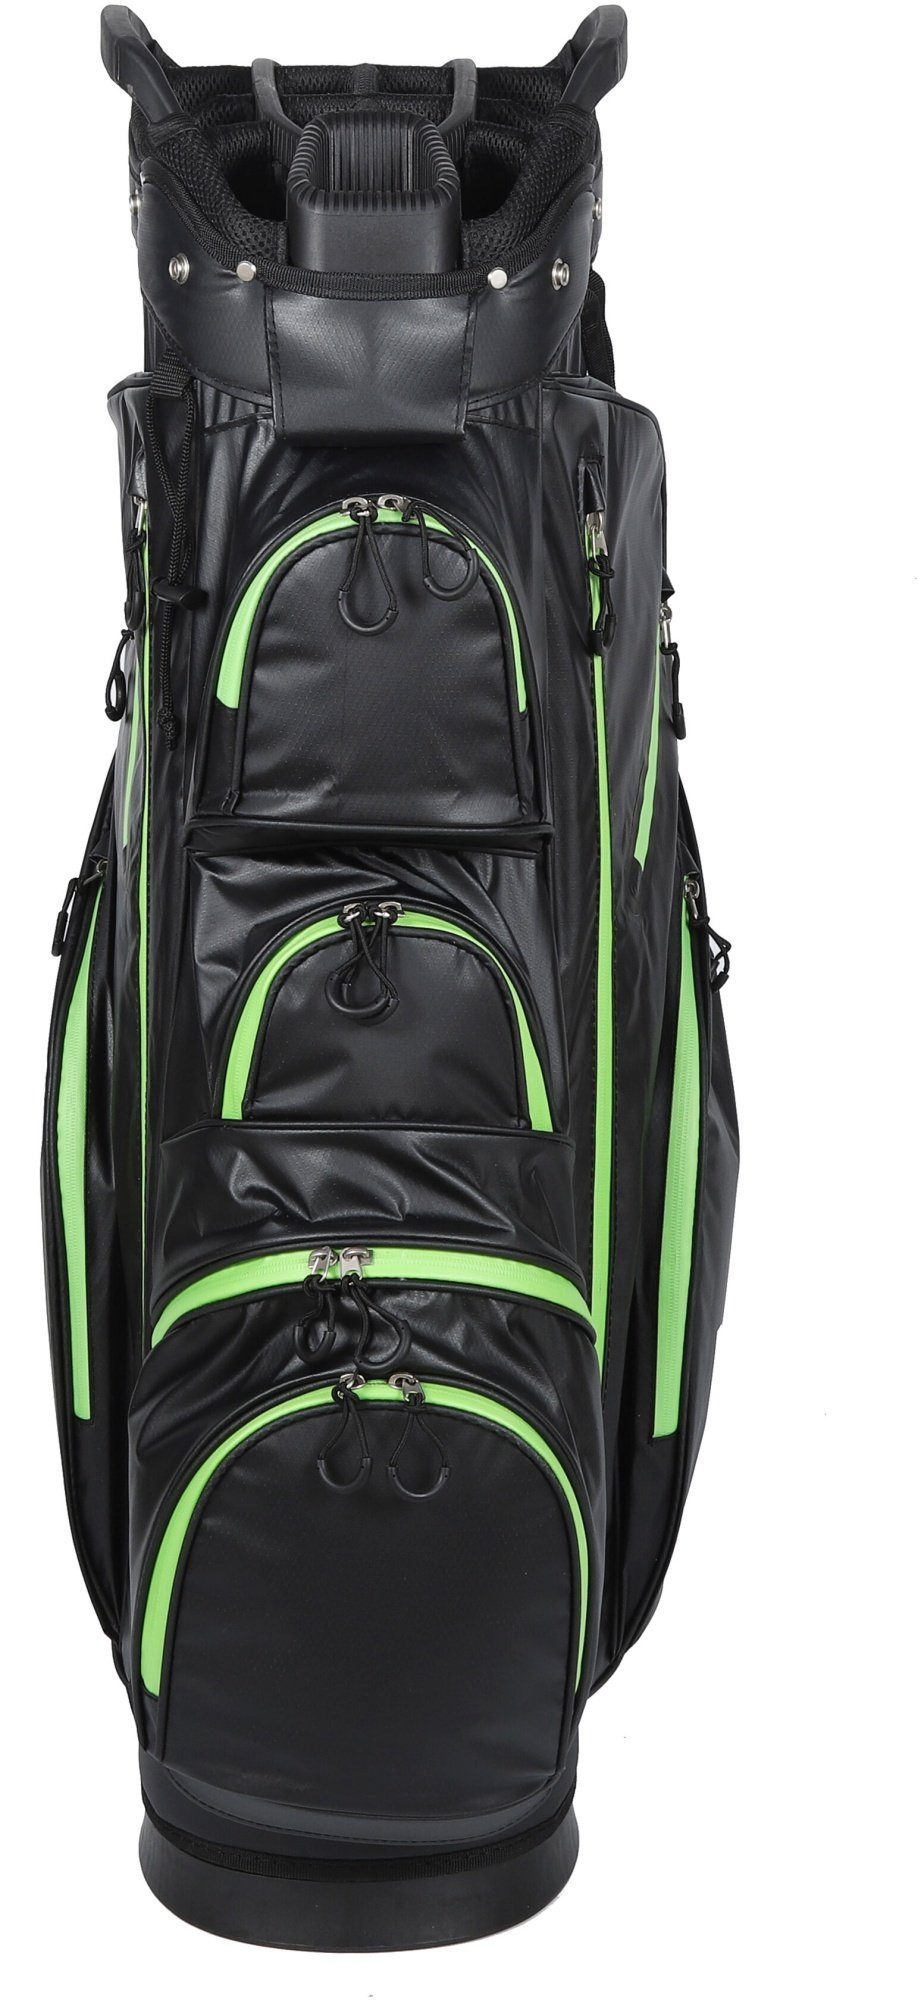 MK Golf Golftrolley Equipment - wasserdicht Trolleybag Golfbag Golftasche, Solid Tour + MK Grün Golf